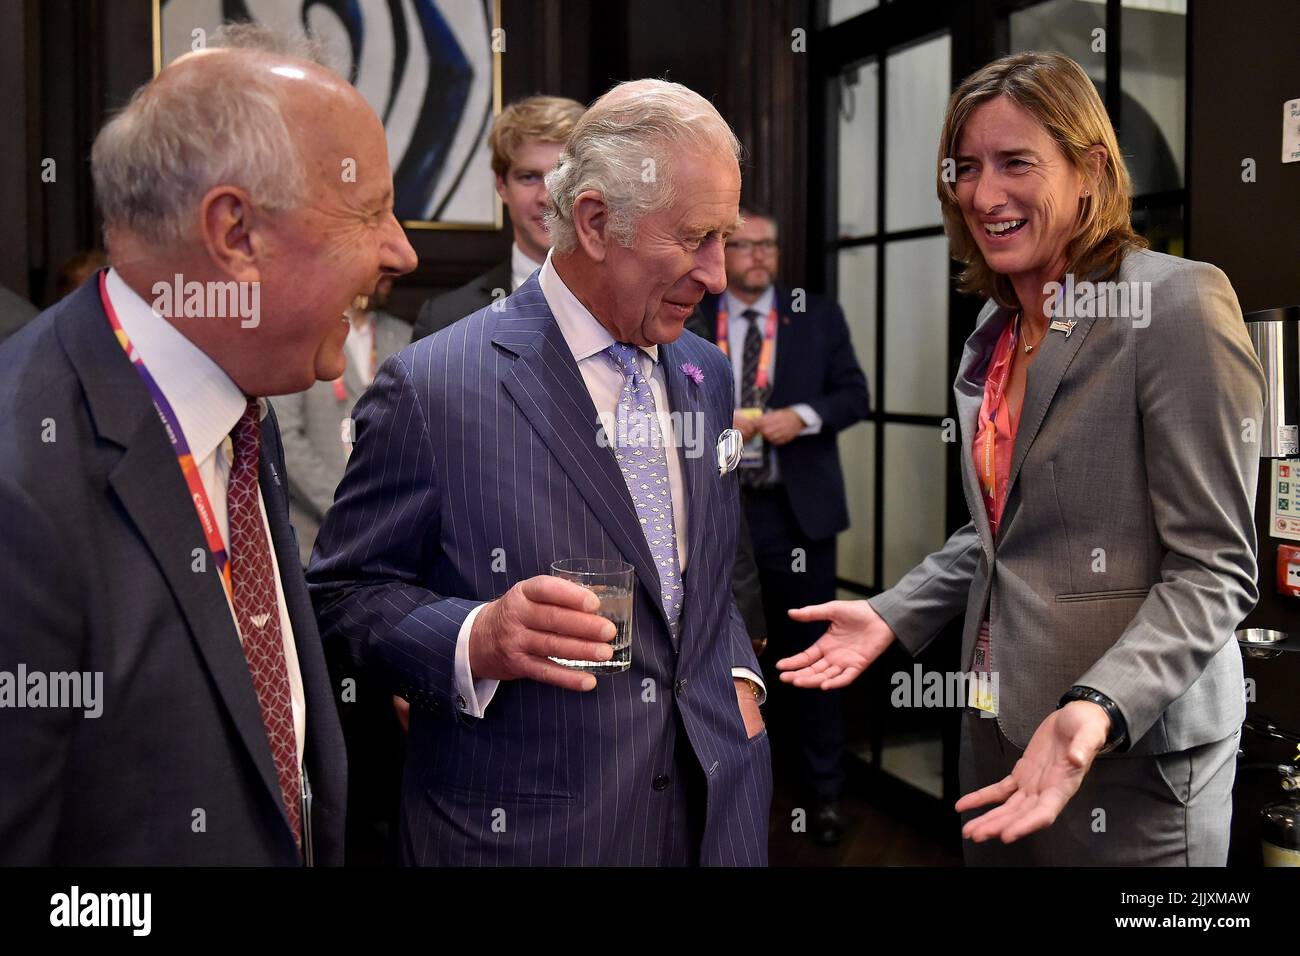 El Príncipe de Gales asiste a la recepción de apertura de los Juegos de la Commonwealth de Birmingham 2022. Fecha de la foto: Jueves 28 de julio de 2022. Foto de stock